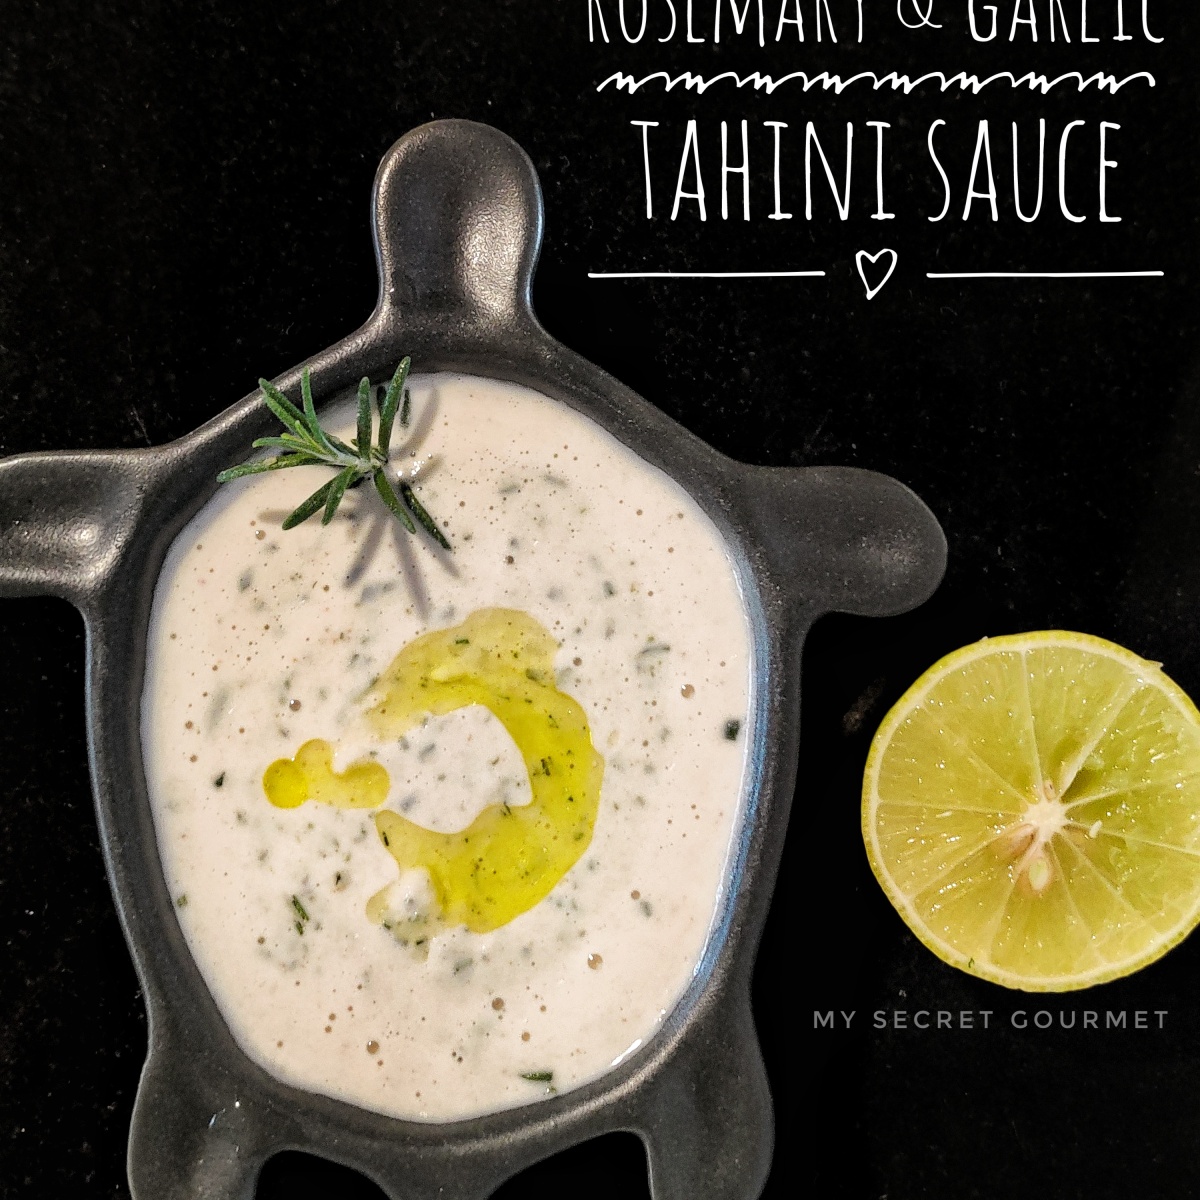 Rosemary & Garlic Tahini Sauce